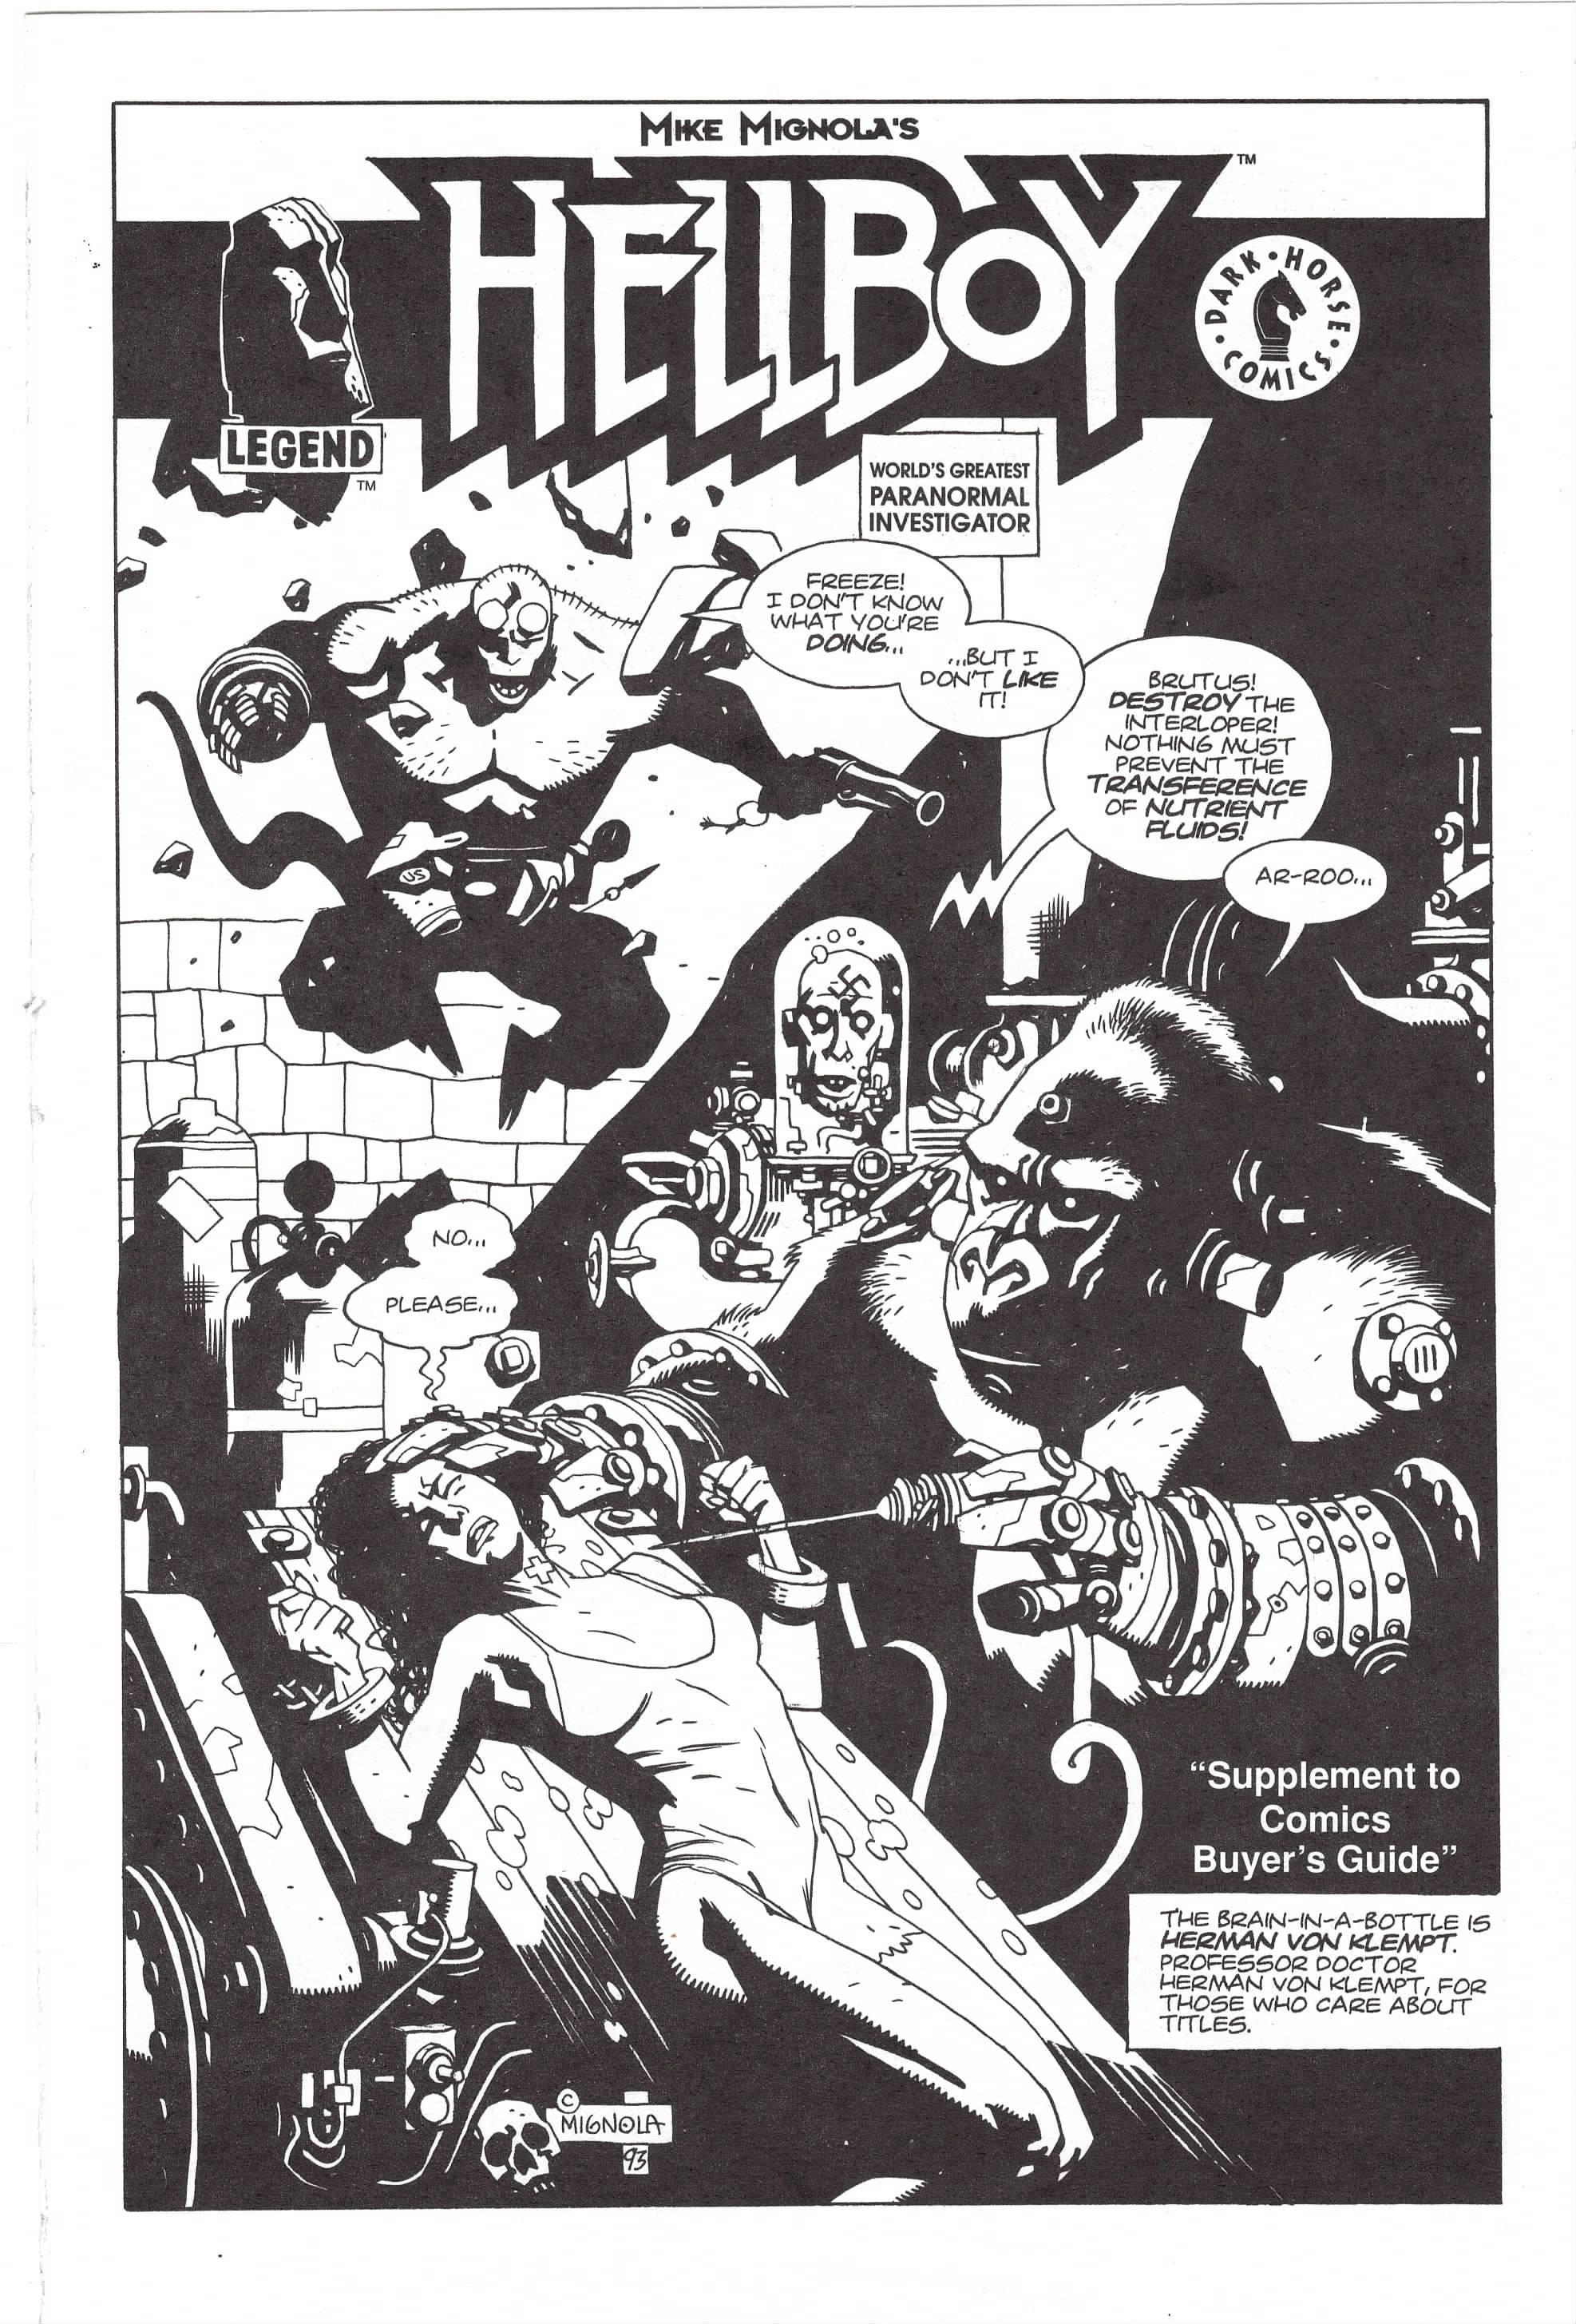 Hellboy Comics Buyer's Guide Supplement